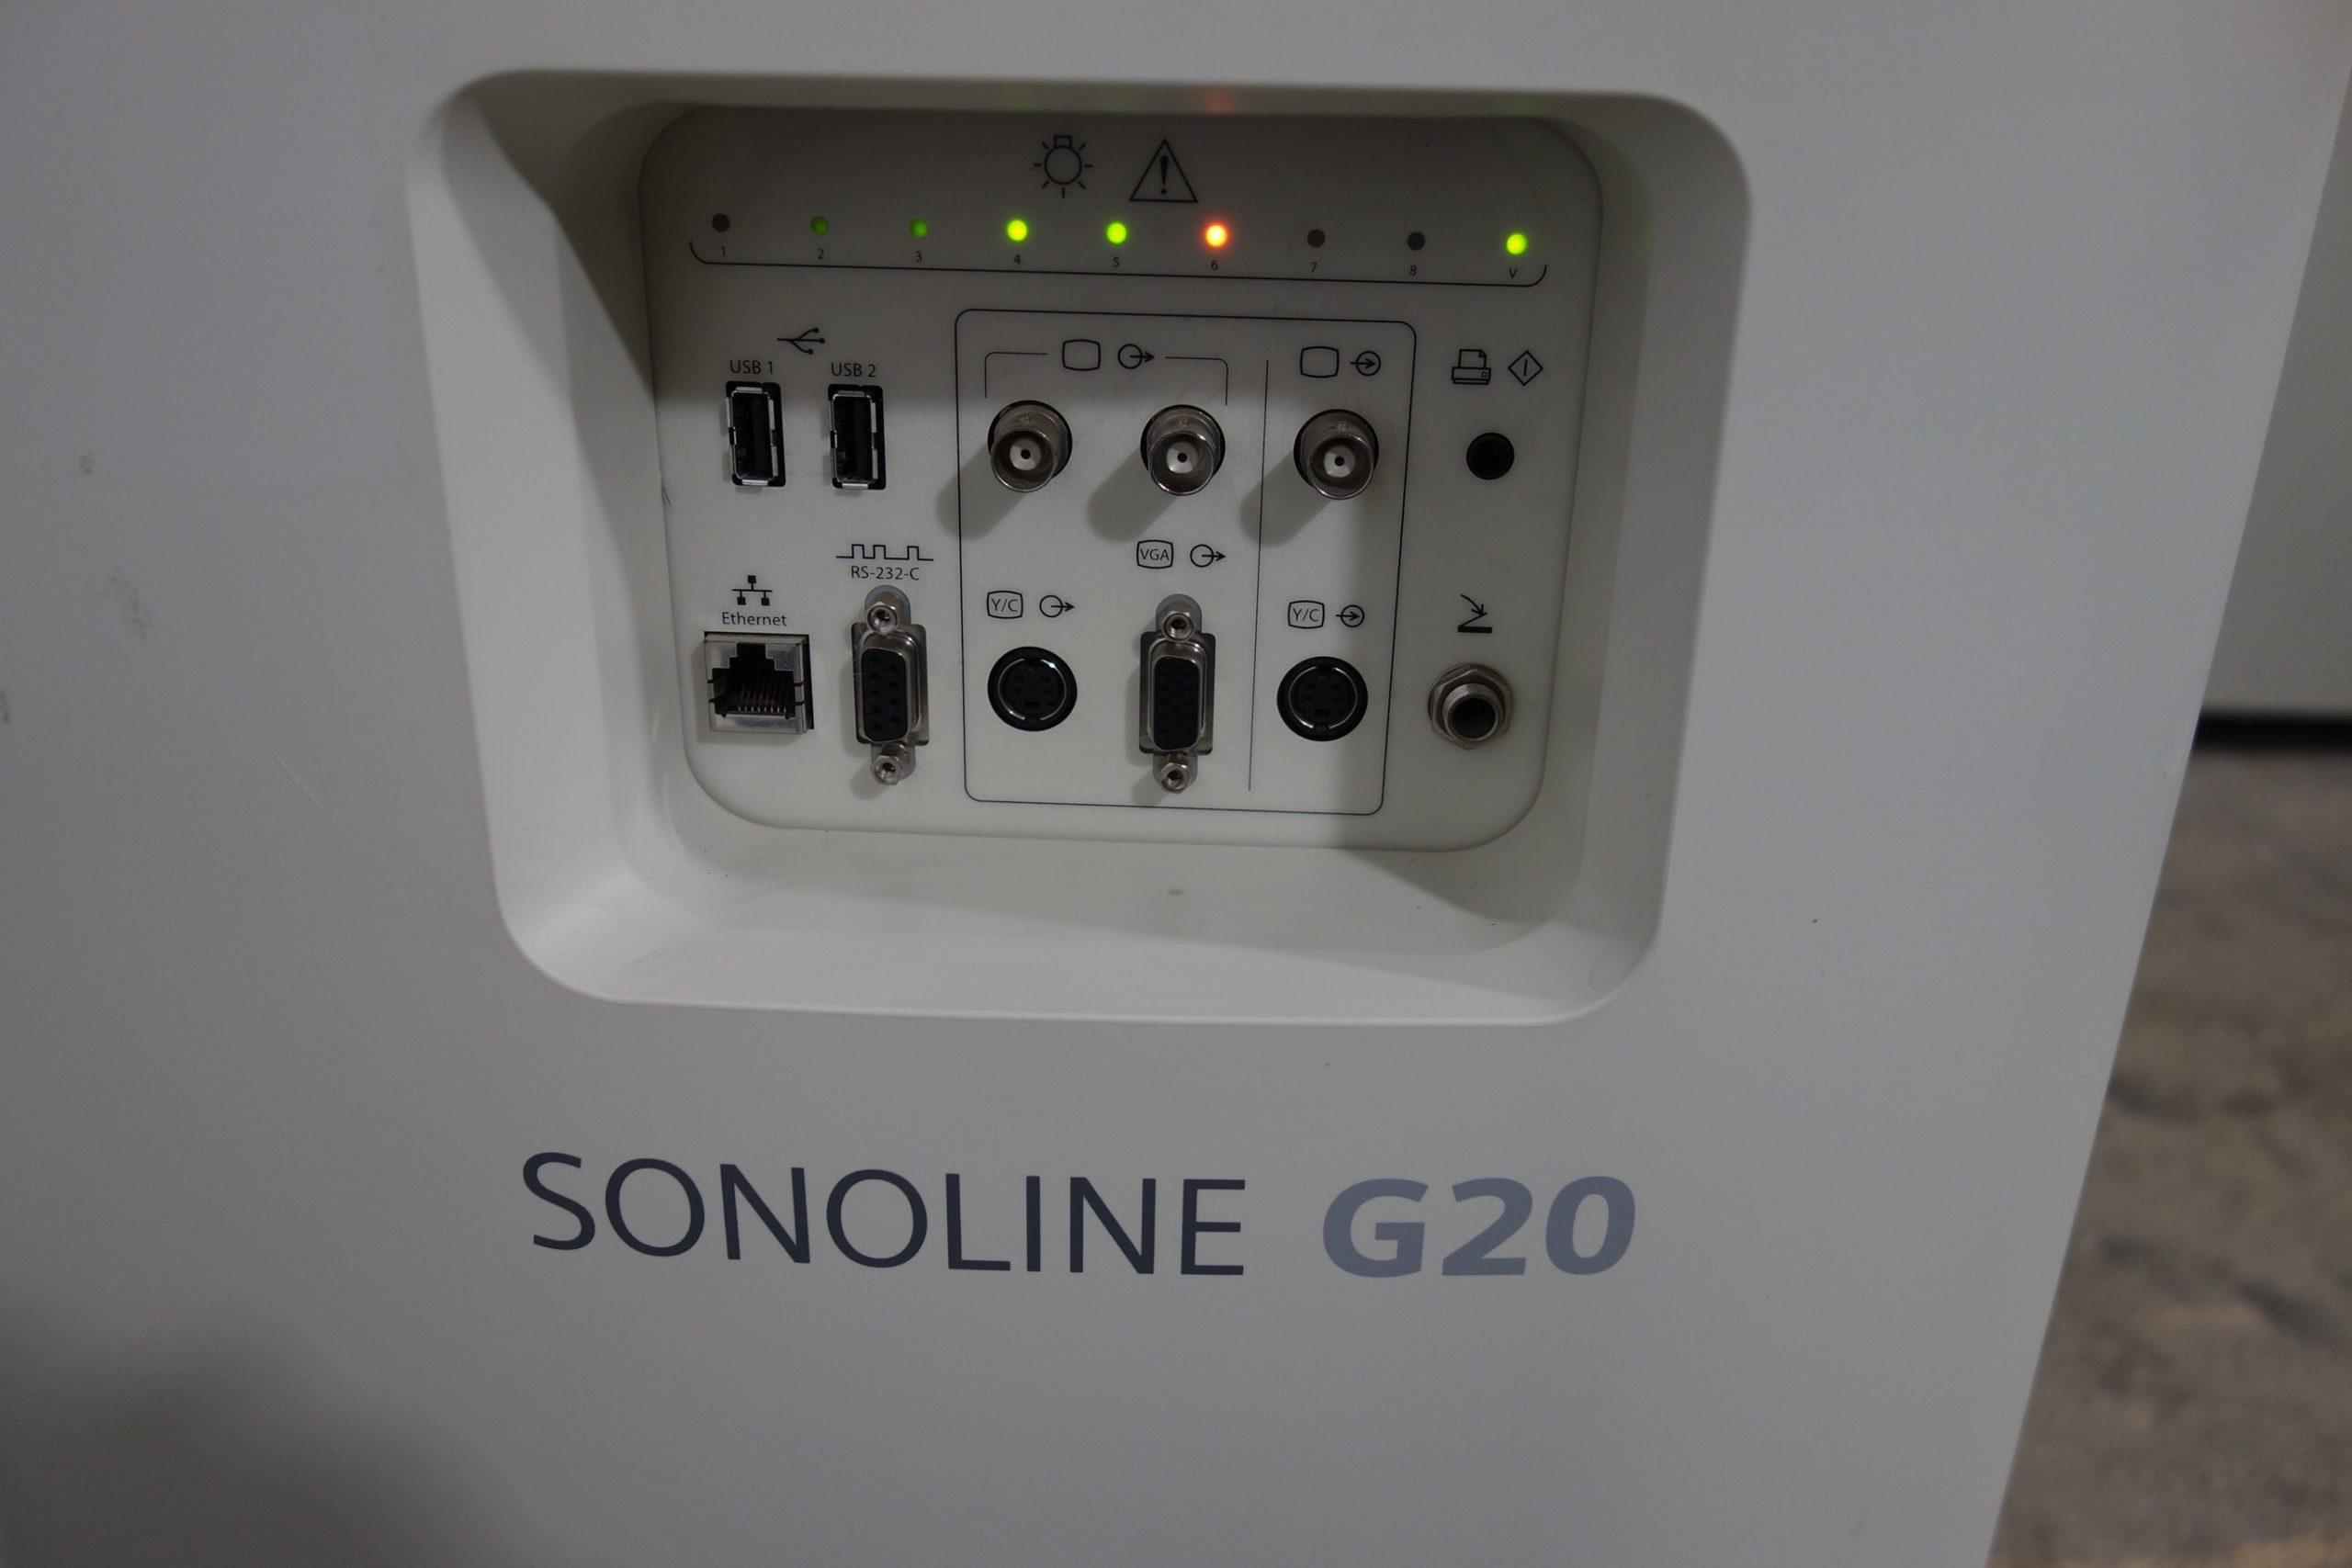 siemens-ultraschallgeraet-sonoline-g20-mit-fehlermeldung-02